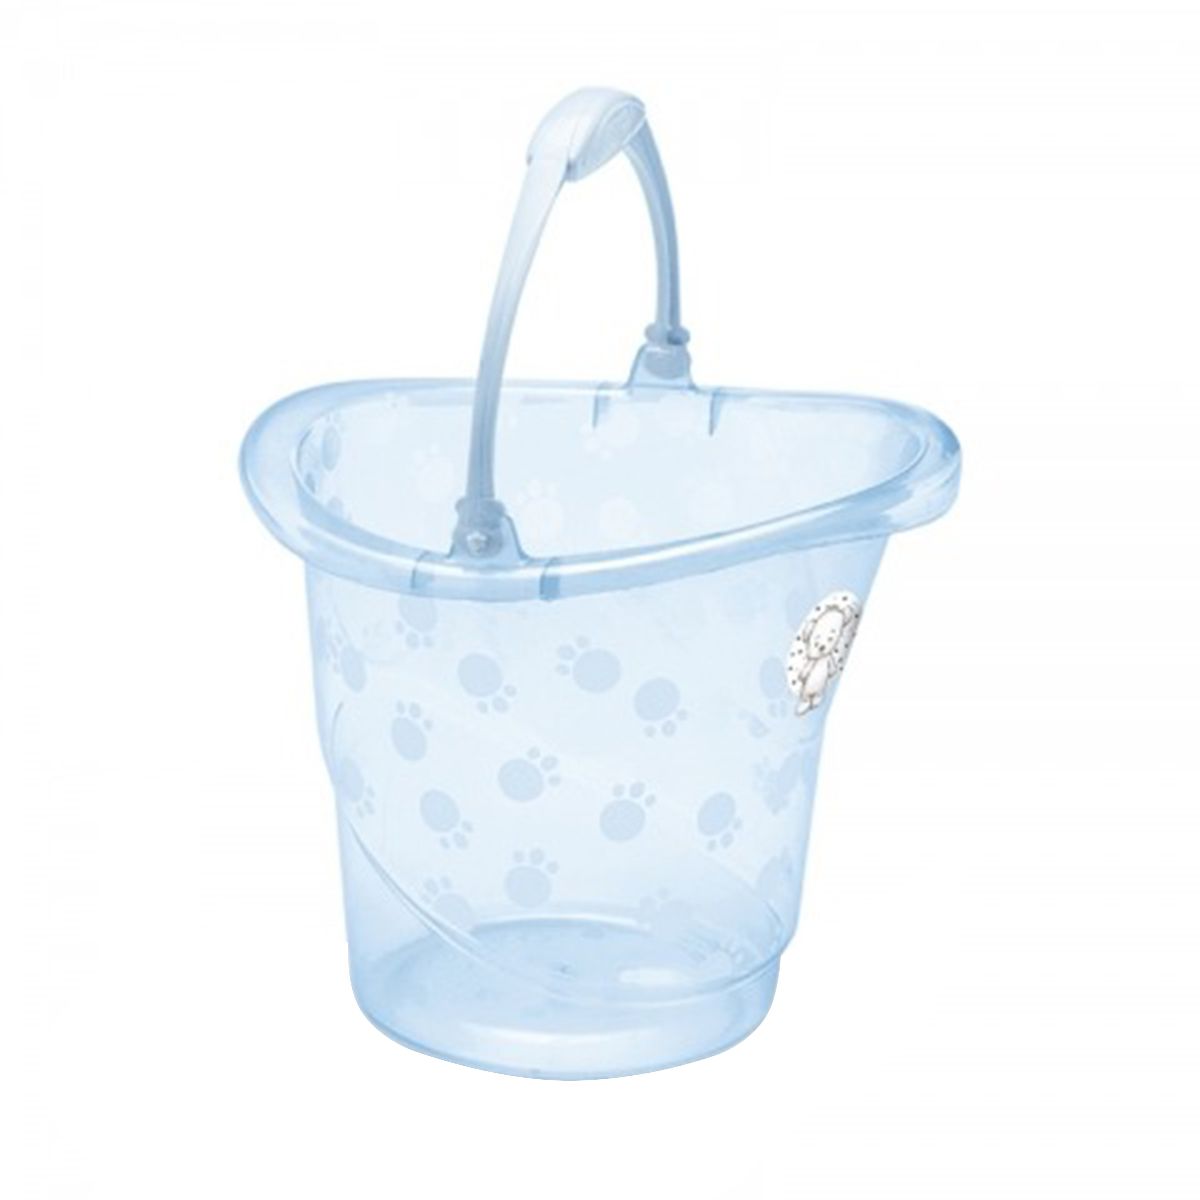 Banheira Bebe Banho Infantil Plástica Rigida Avulsa Desde Nascimento  Portátil 22 L Azul Perolada - Baby&Kids